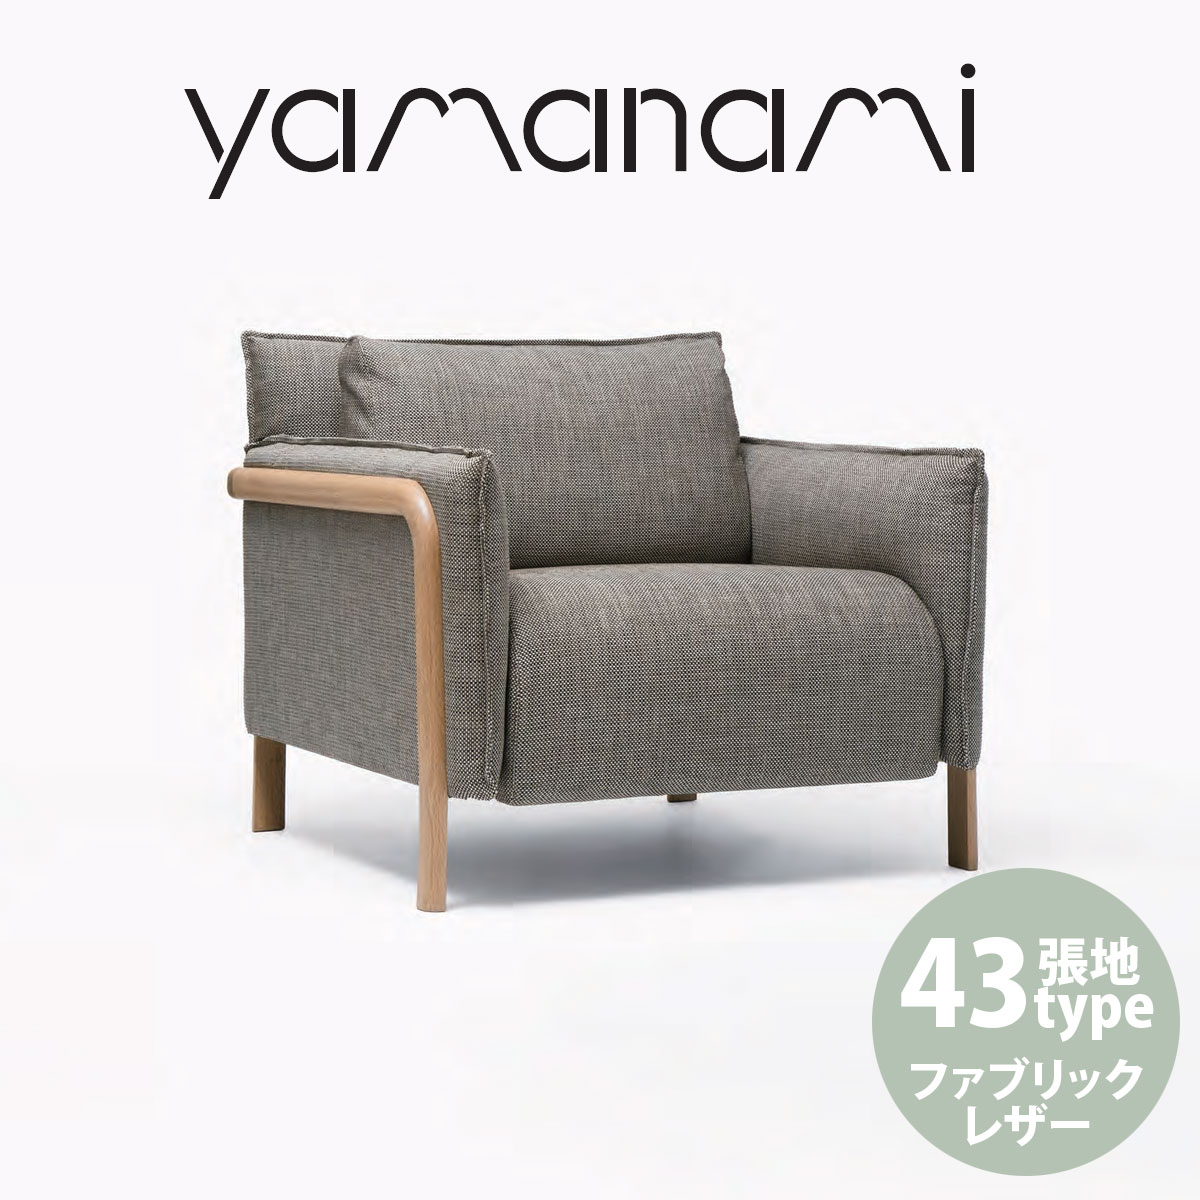 ソファ 匠工芸 yamanami 2人掛けソファ オーク YS1 890 張地L2 椅子 ソファ ベンチ 日本製 木製 家具 ウッド 送料無料